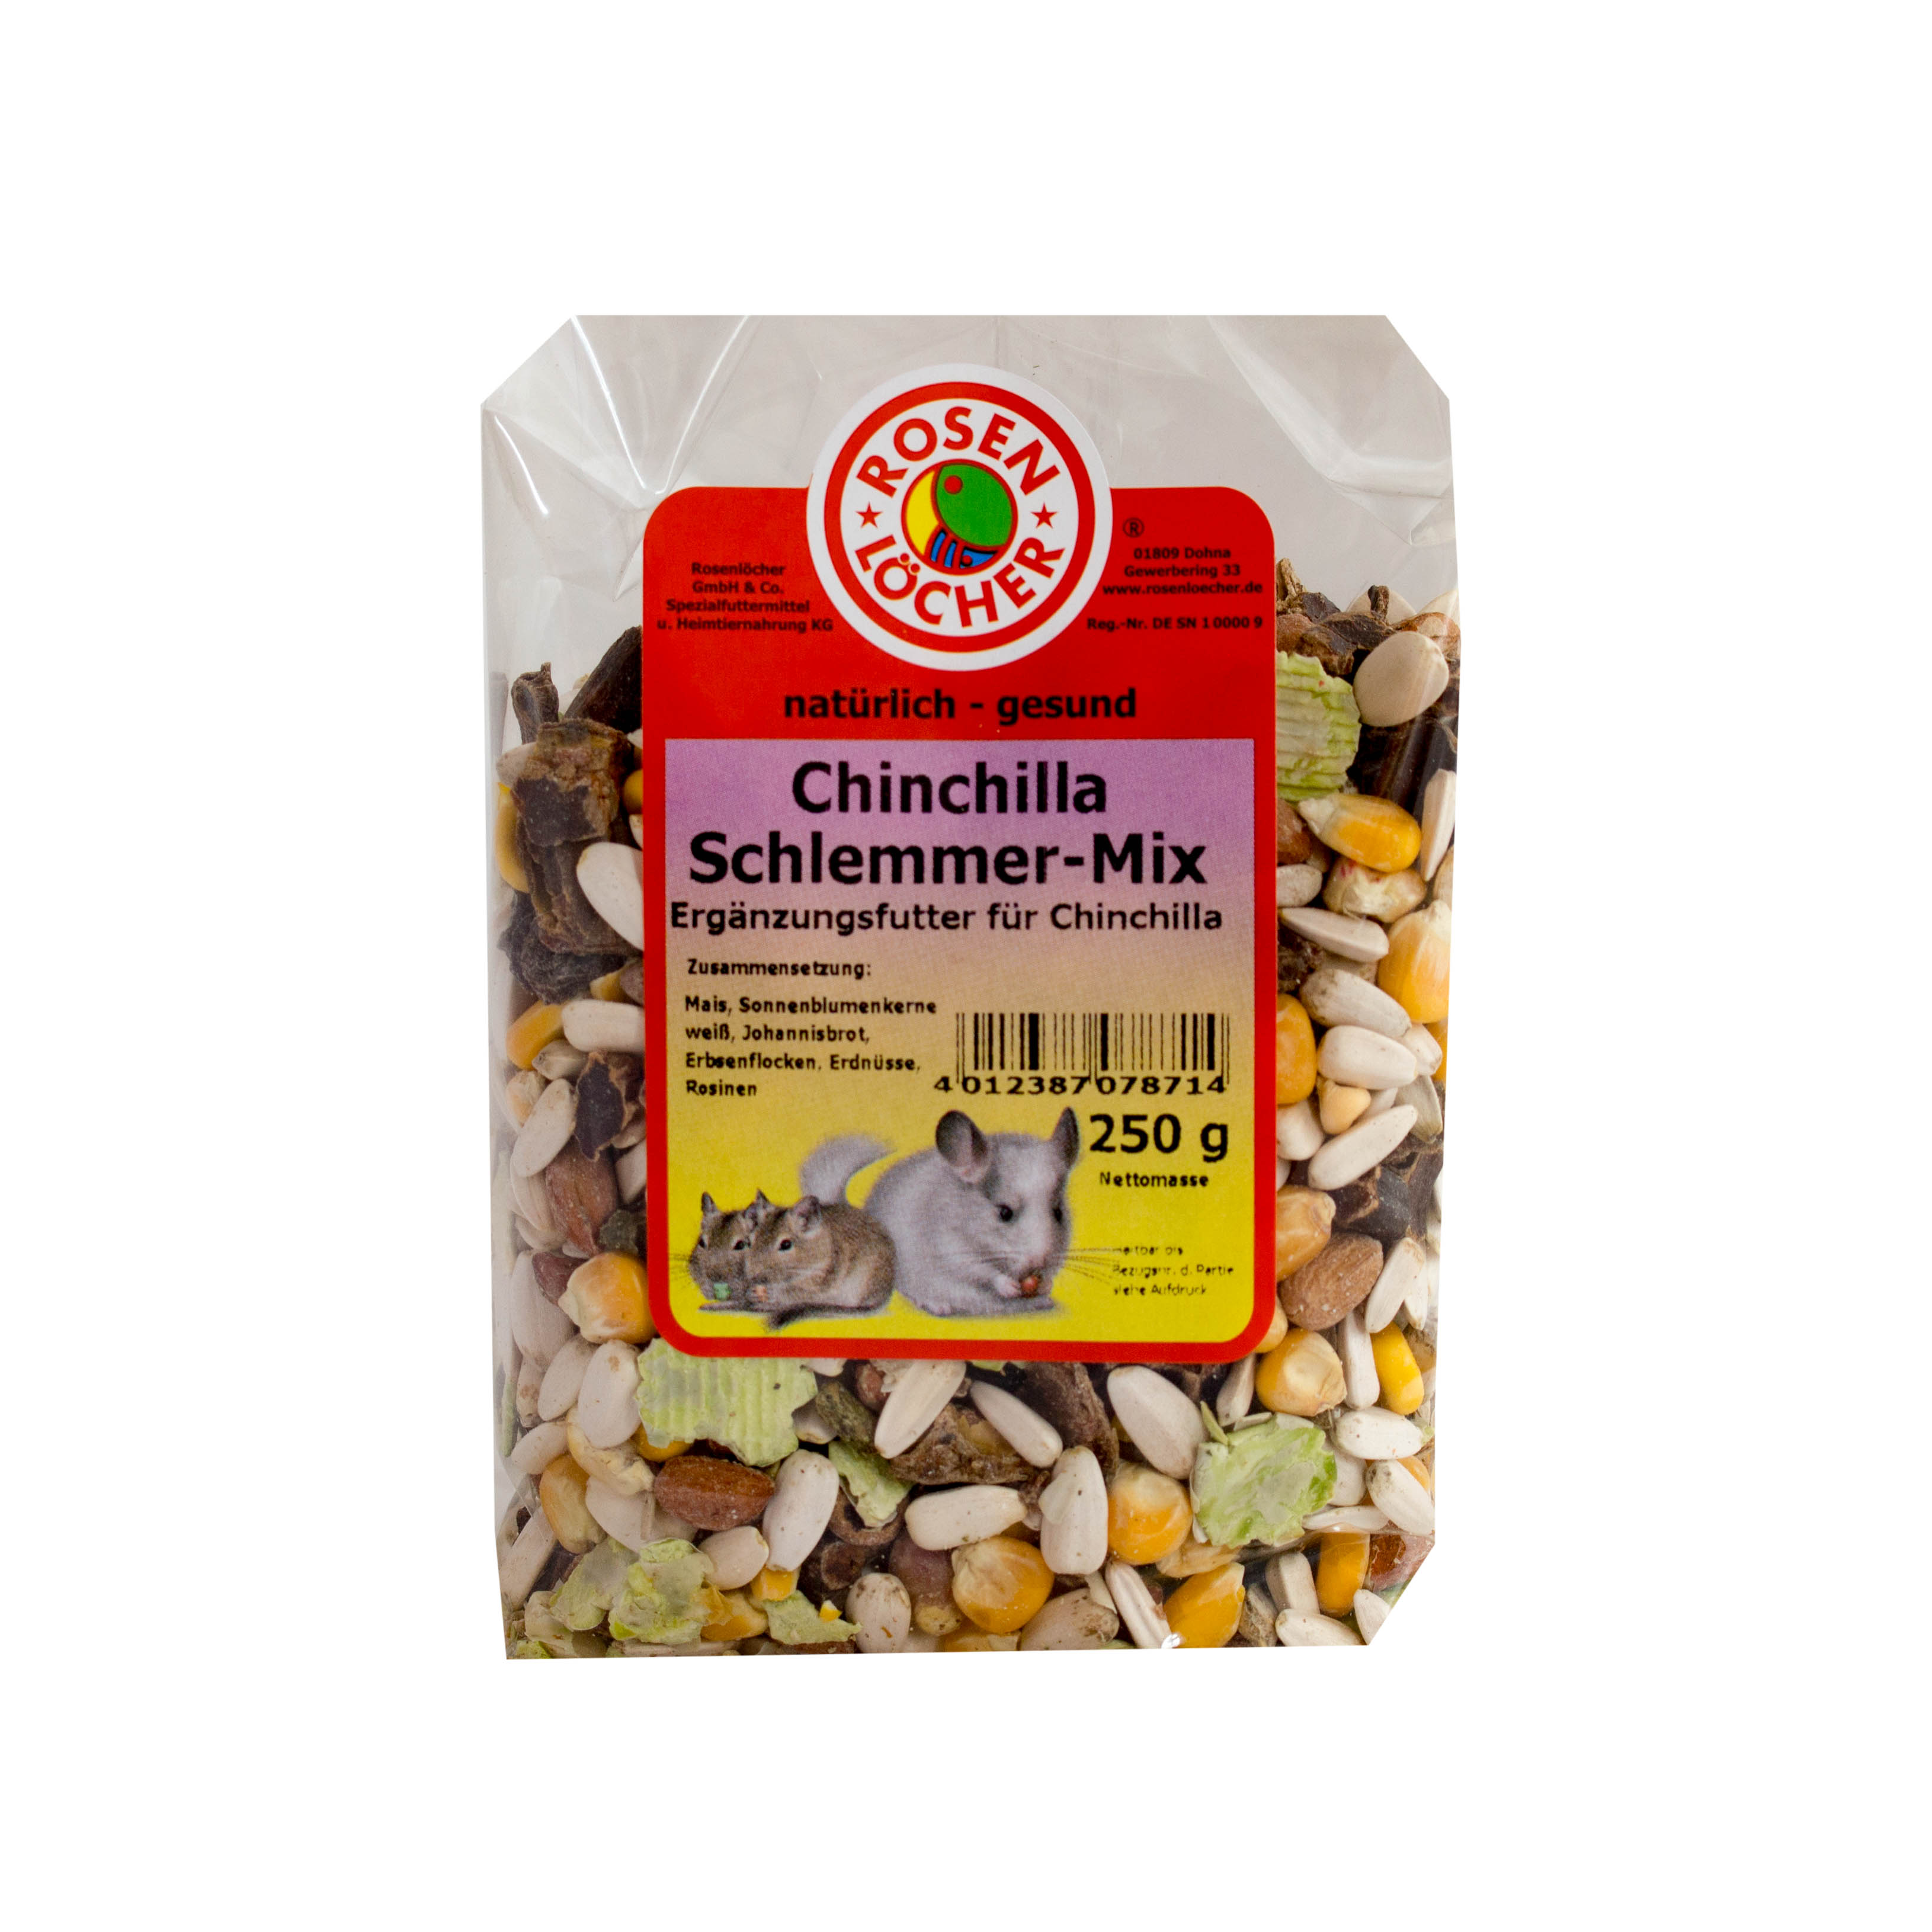 ROSENLÖCHER - Chinchilla Schlemmermix 250g Alleinfutter